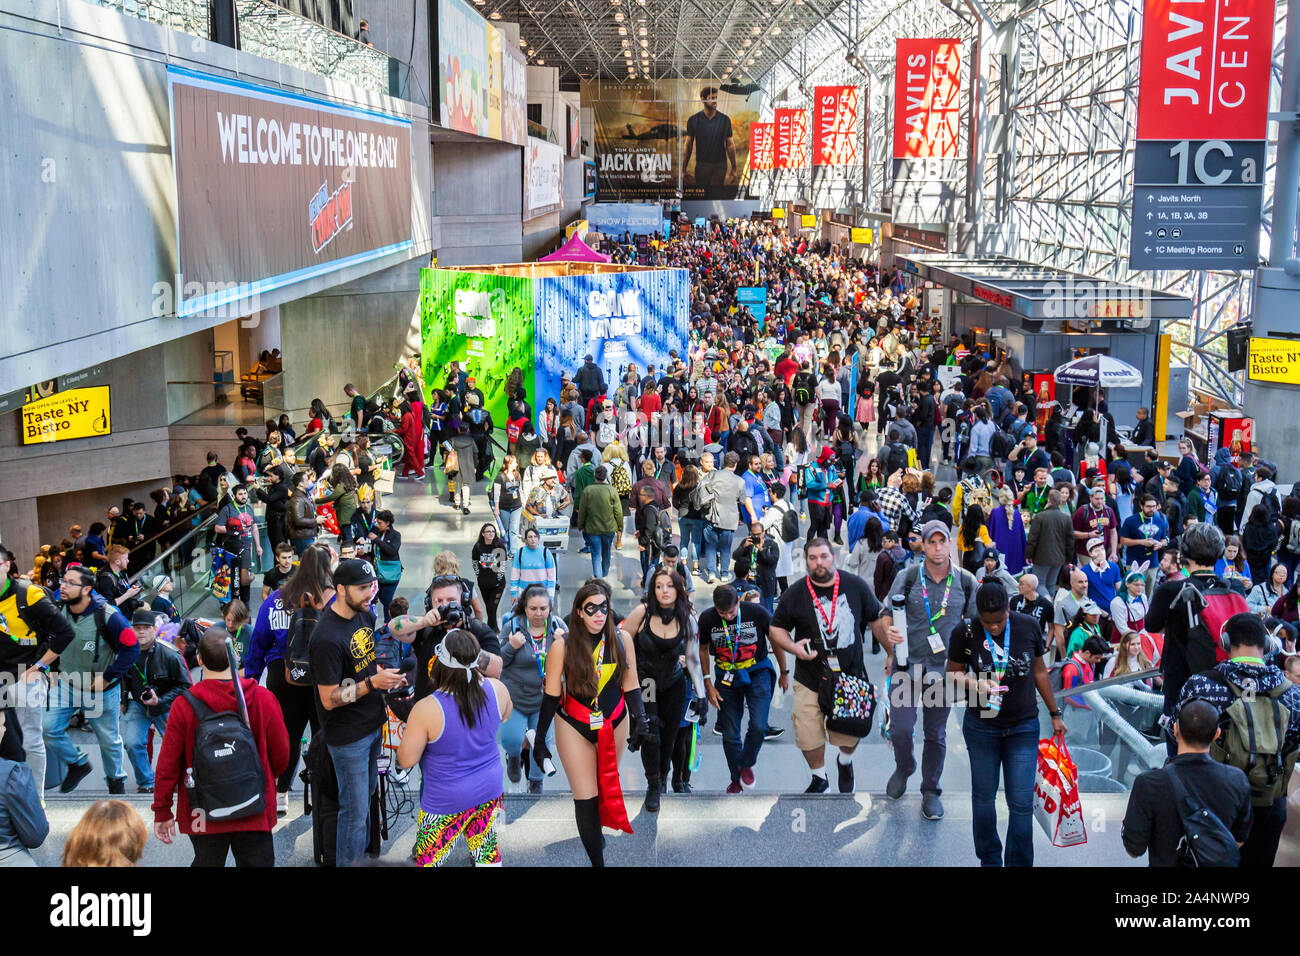 Los visitantes y los aficionados asistir a la New York Comic Con Comic Book, el cine y la Convención. Foto de stock